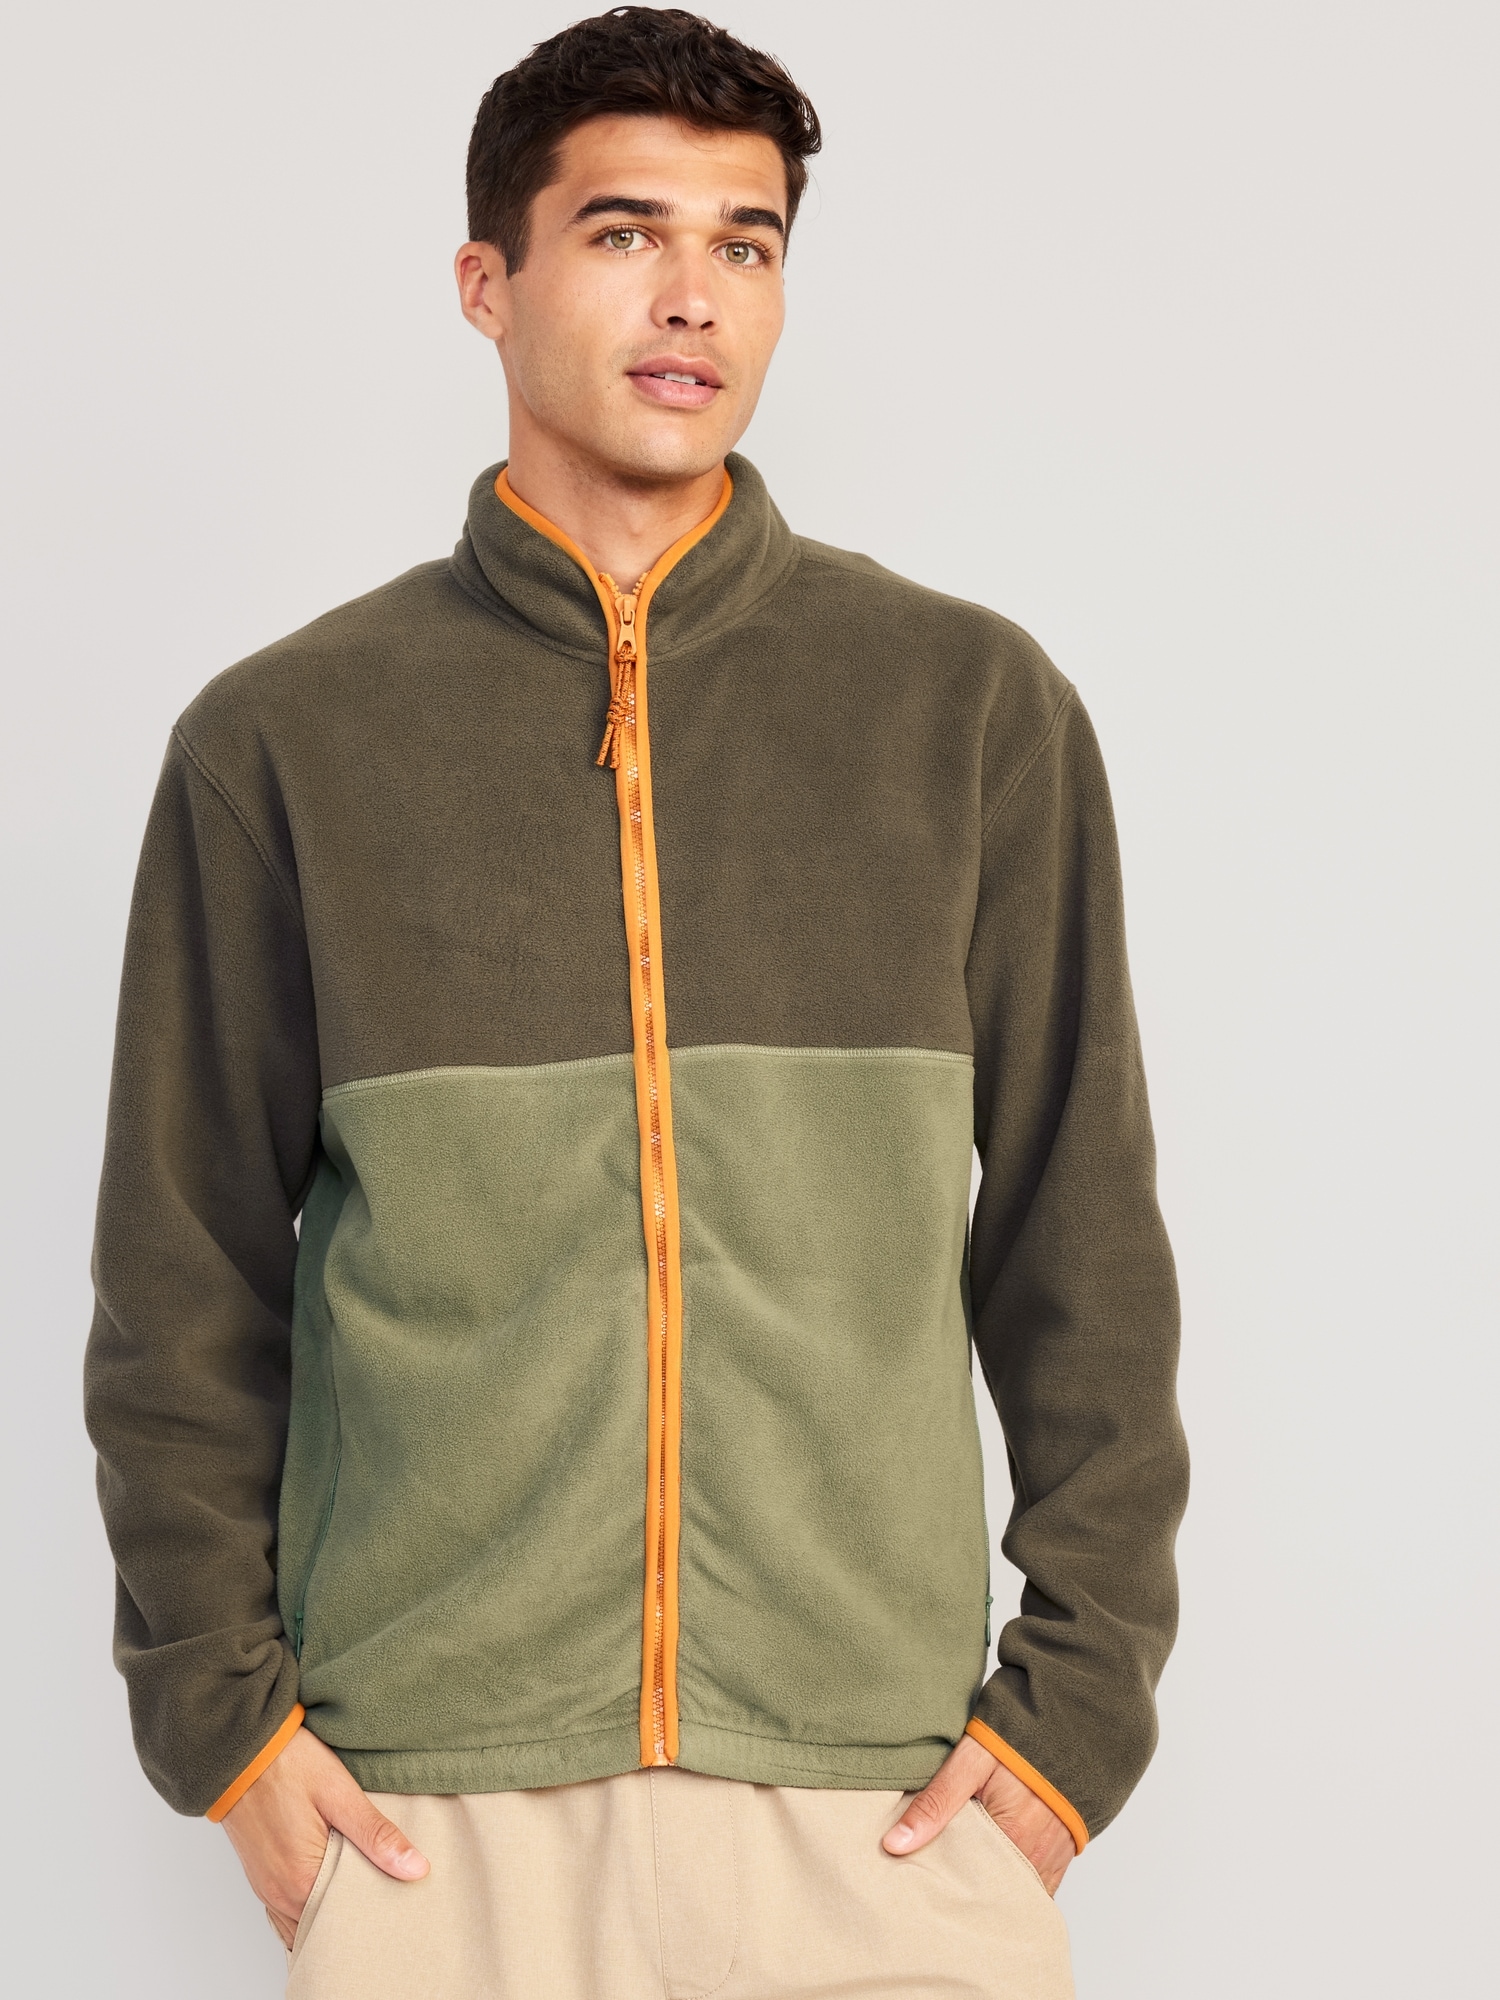 Oversized Micro-Fleece Zip Jacket for Navy Men | Old